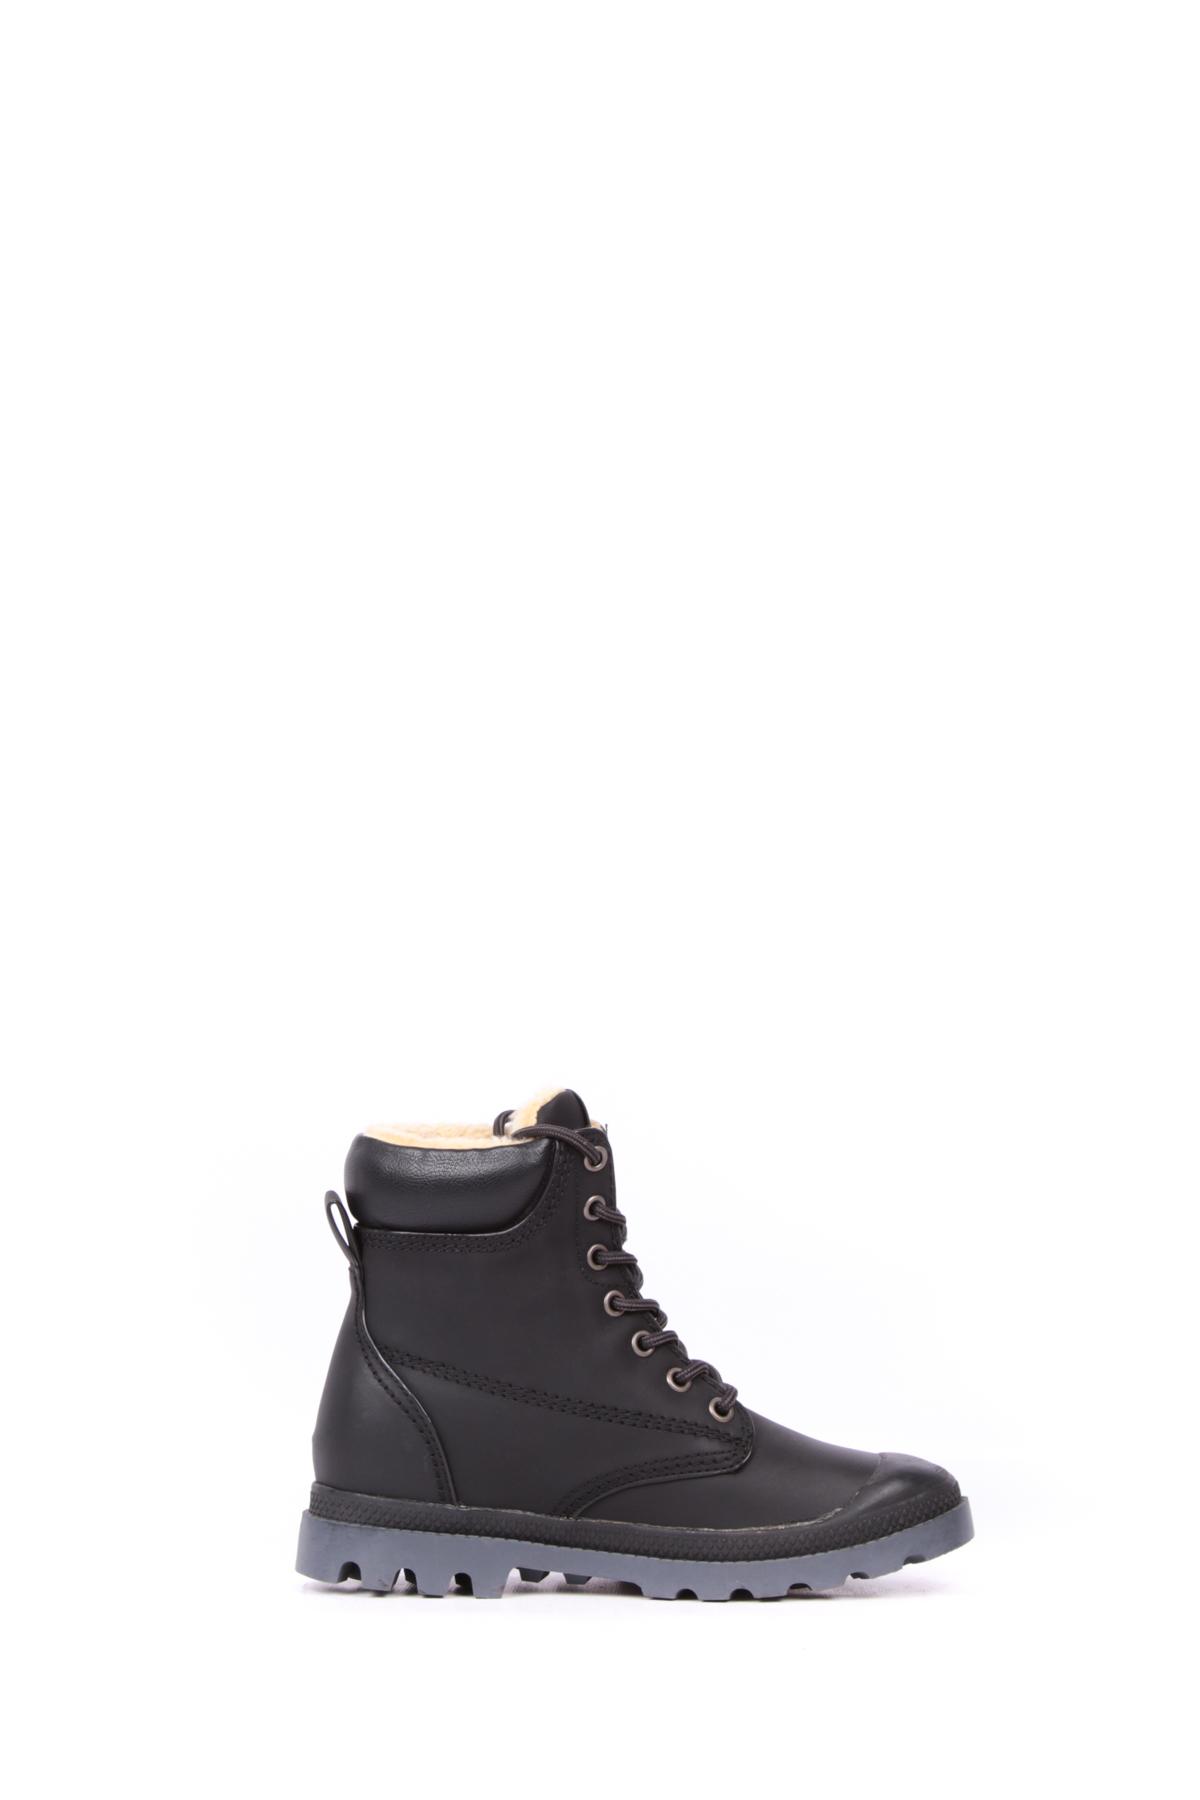 Botines Zapatos Black BELLE SHOES X5903 #c Efashion Paris